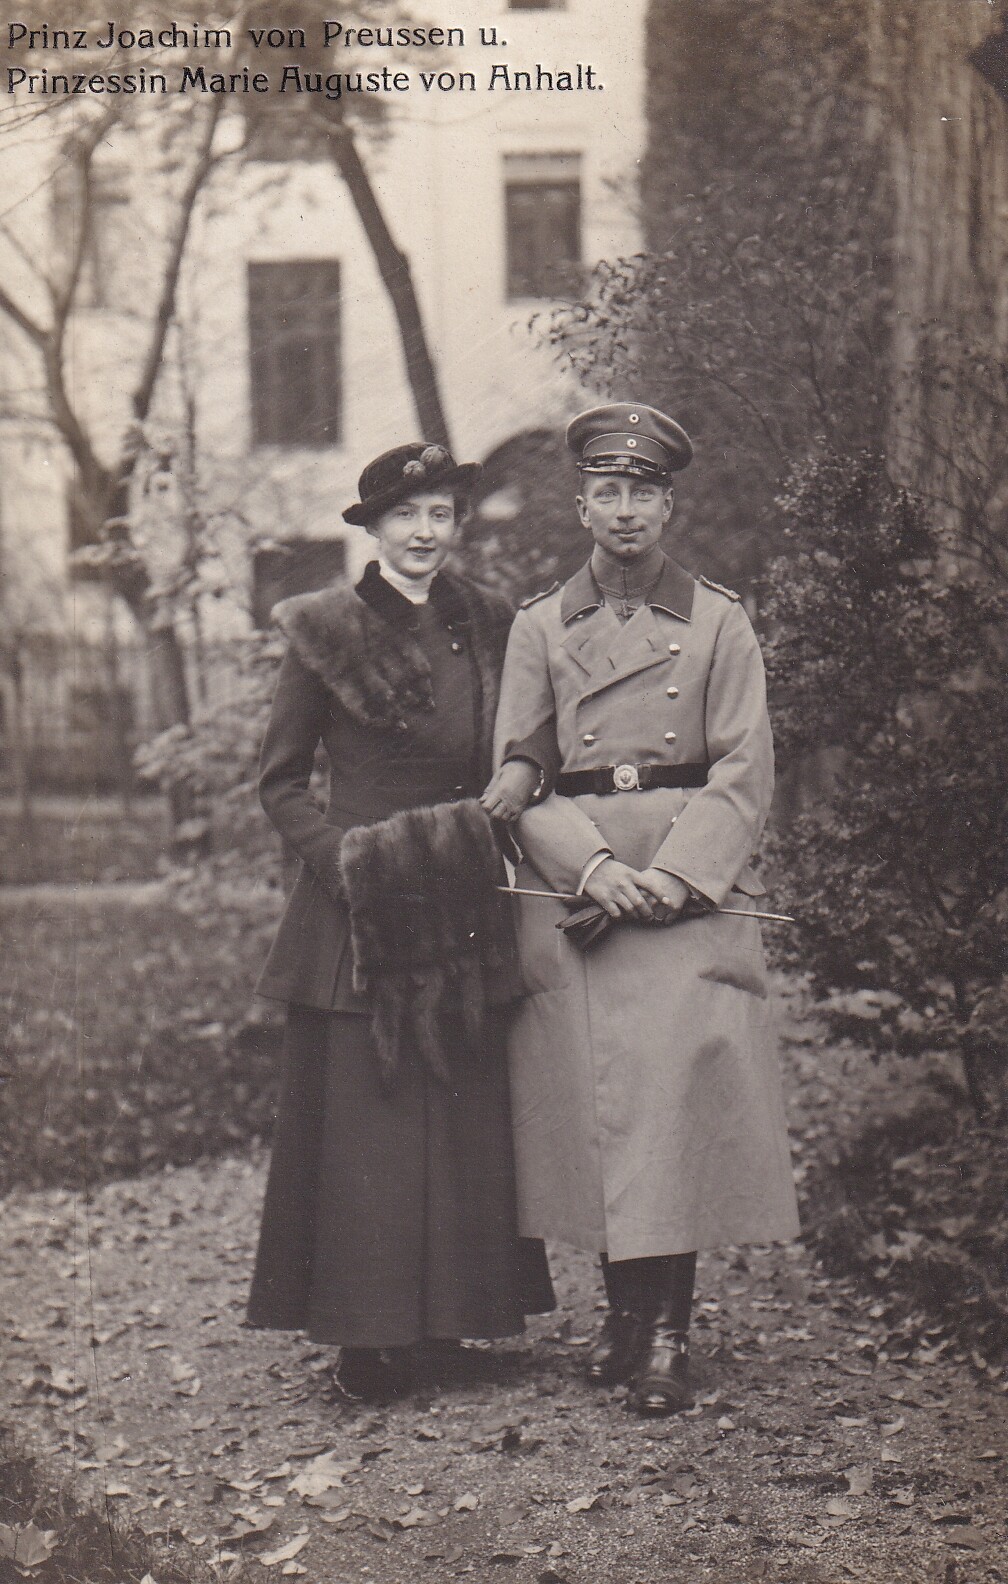 Bildpostkarte mit Foto des Prinzen Joachim von Preußen mit Prinzessin Marie Auguste von Anhalt, 1915 (Schloß Wernigerode GmbH RR-F)